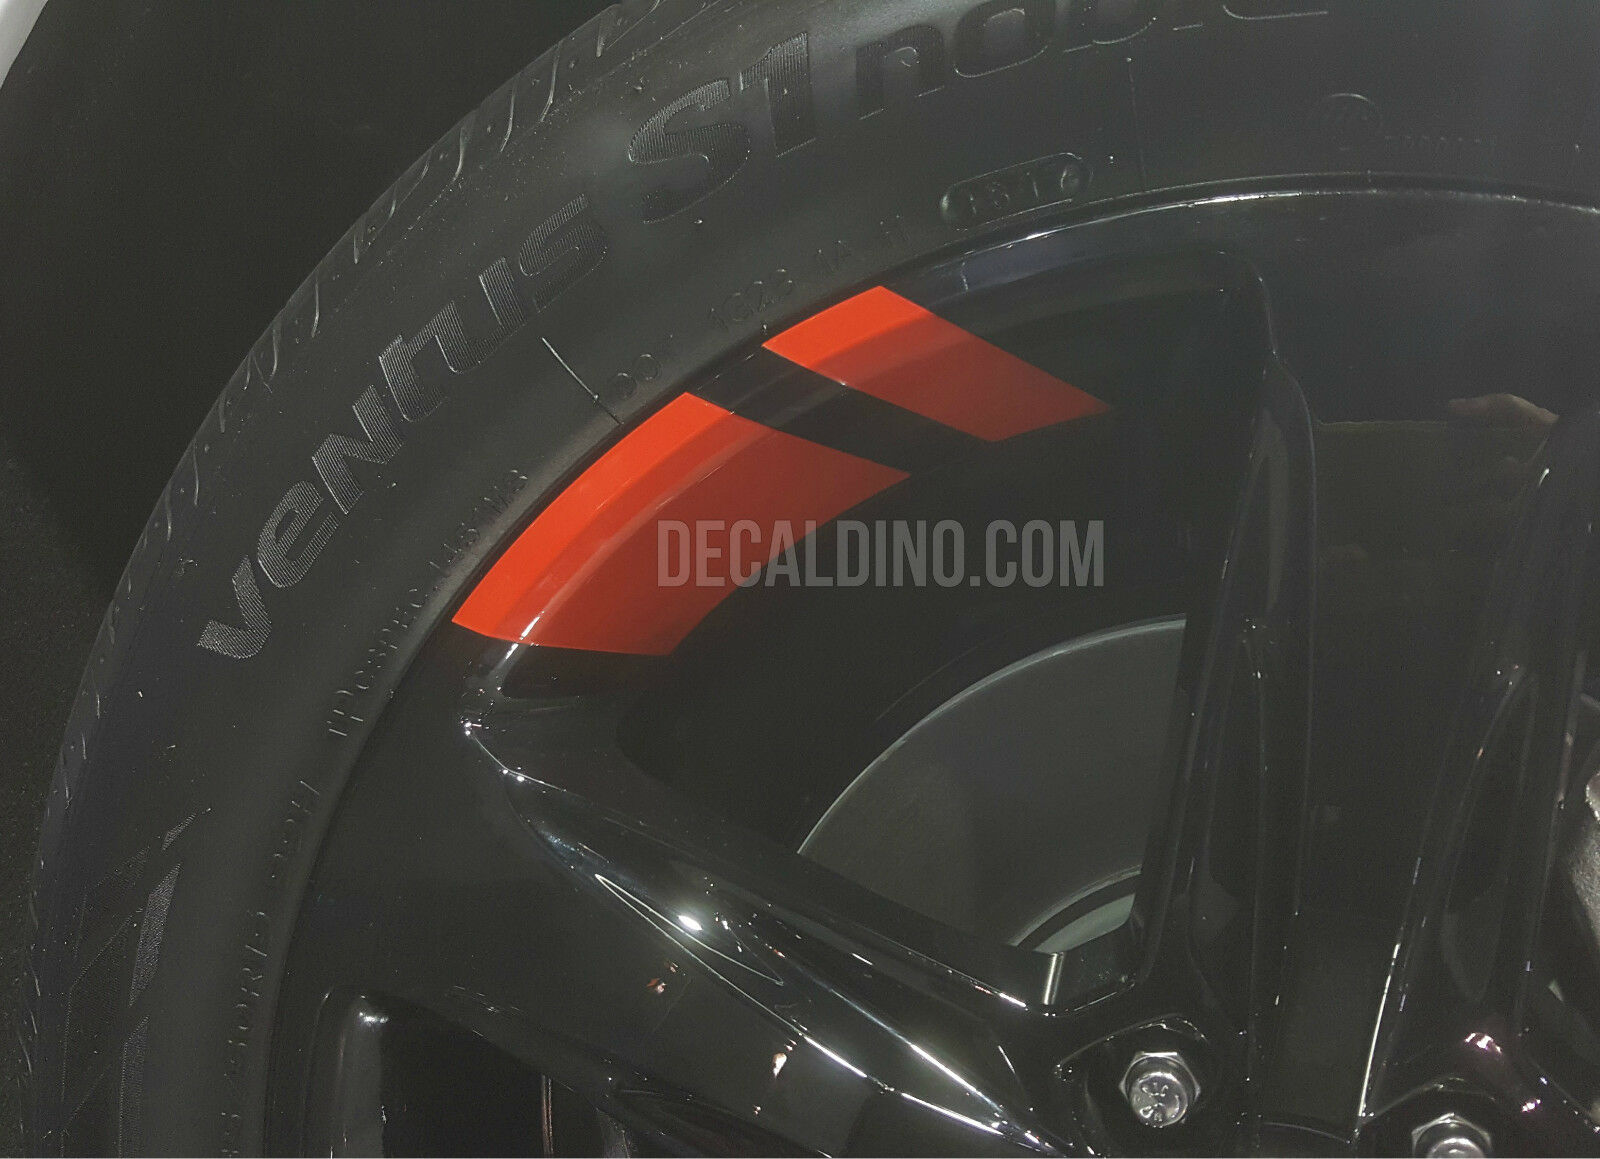 Wheel Stripes Hash Marks - Fits Camaro Chevy Redline Rim Stickers Cruze Decals